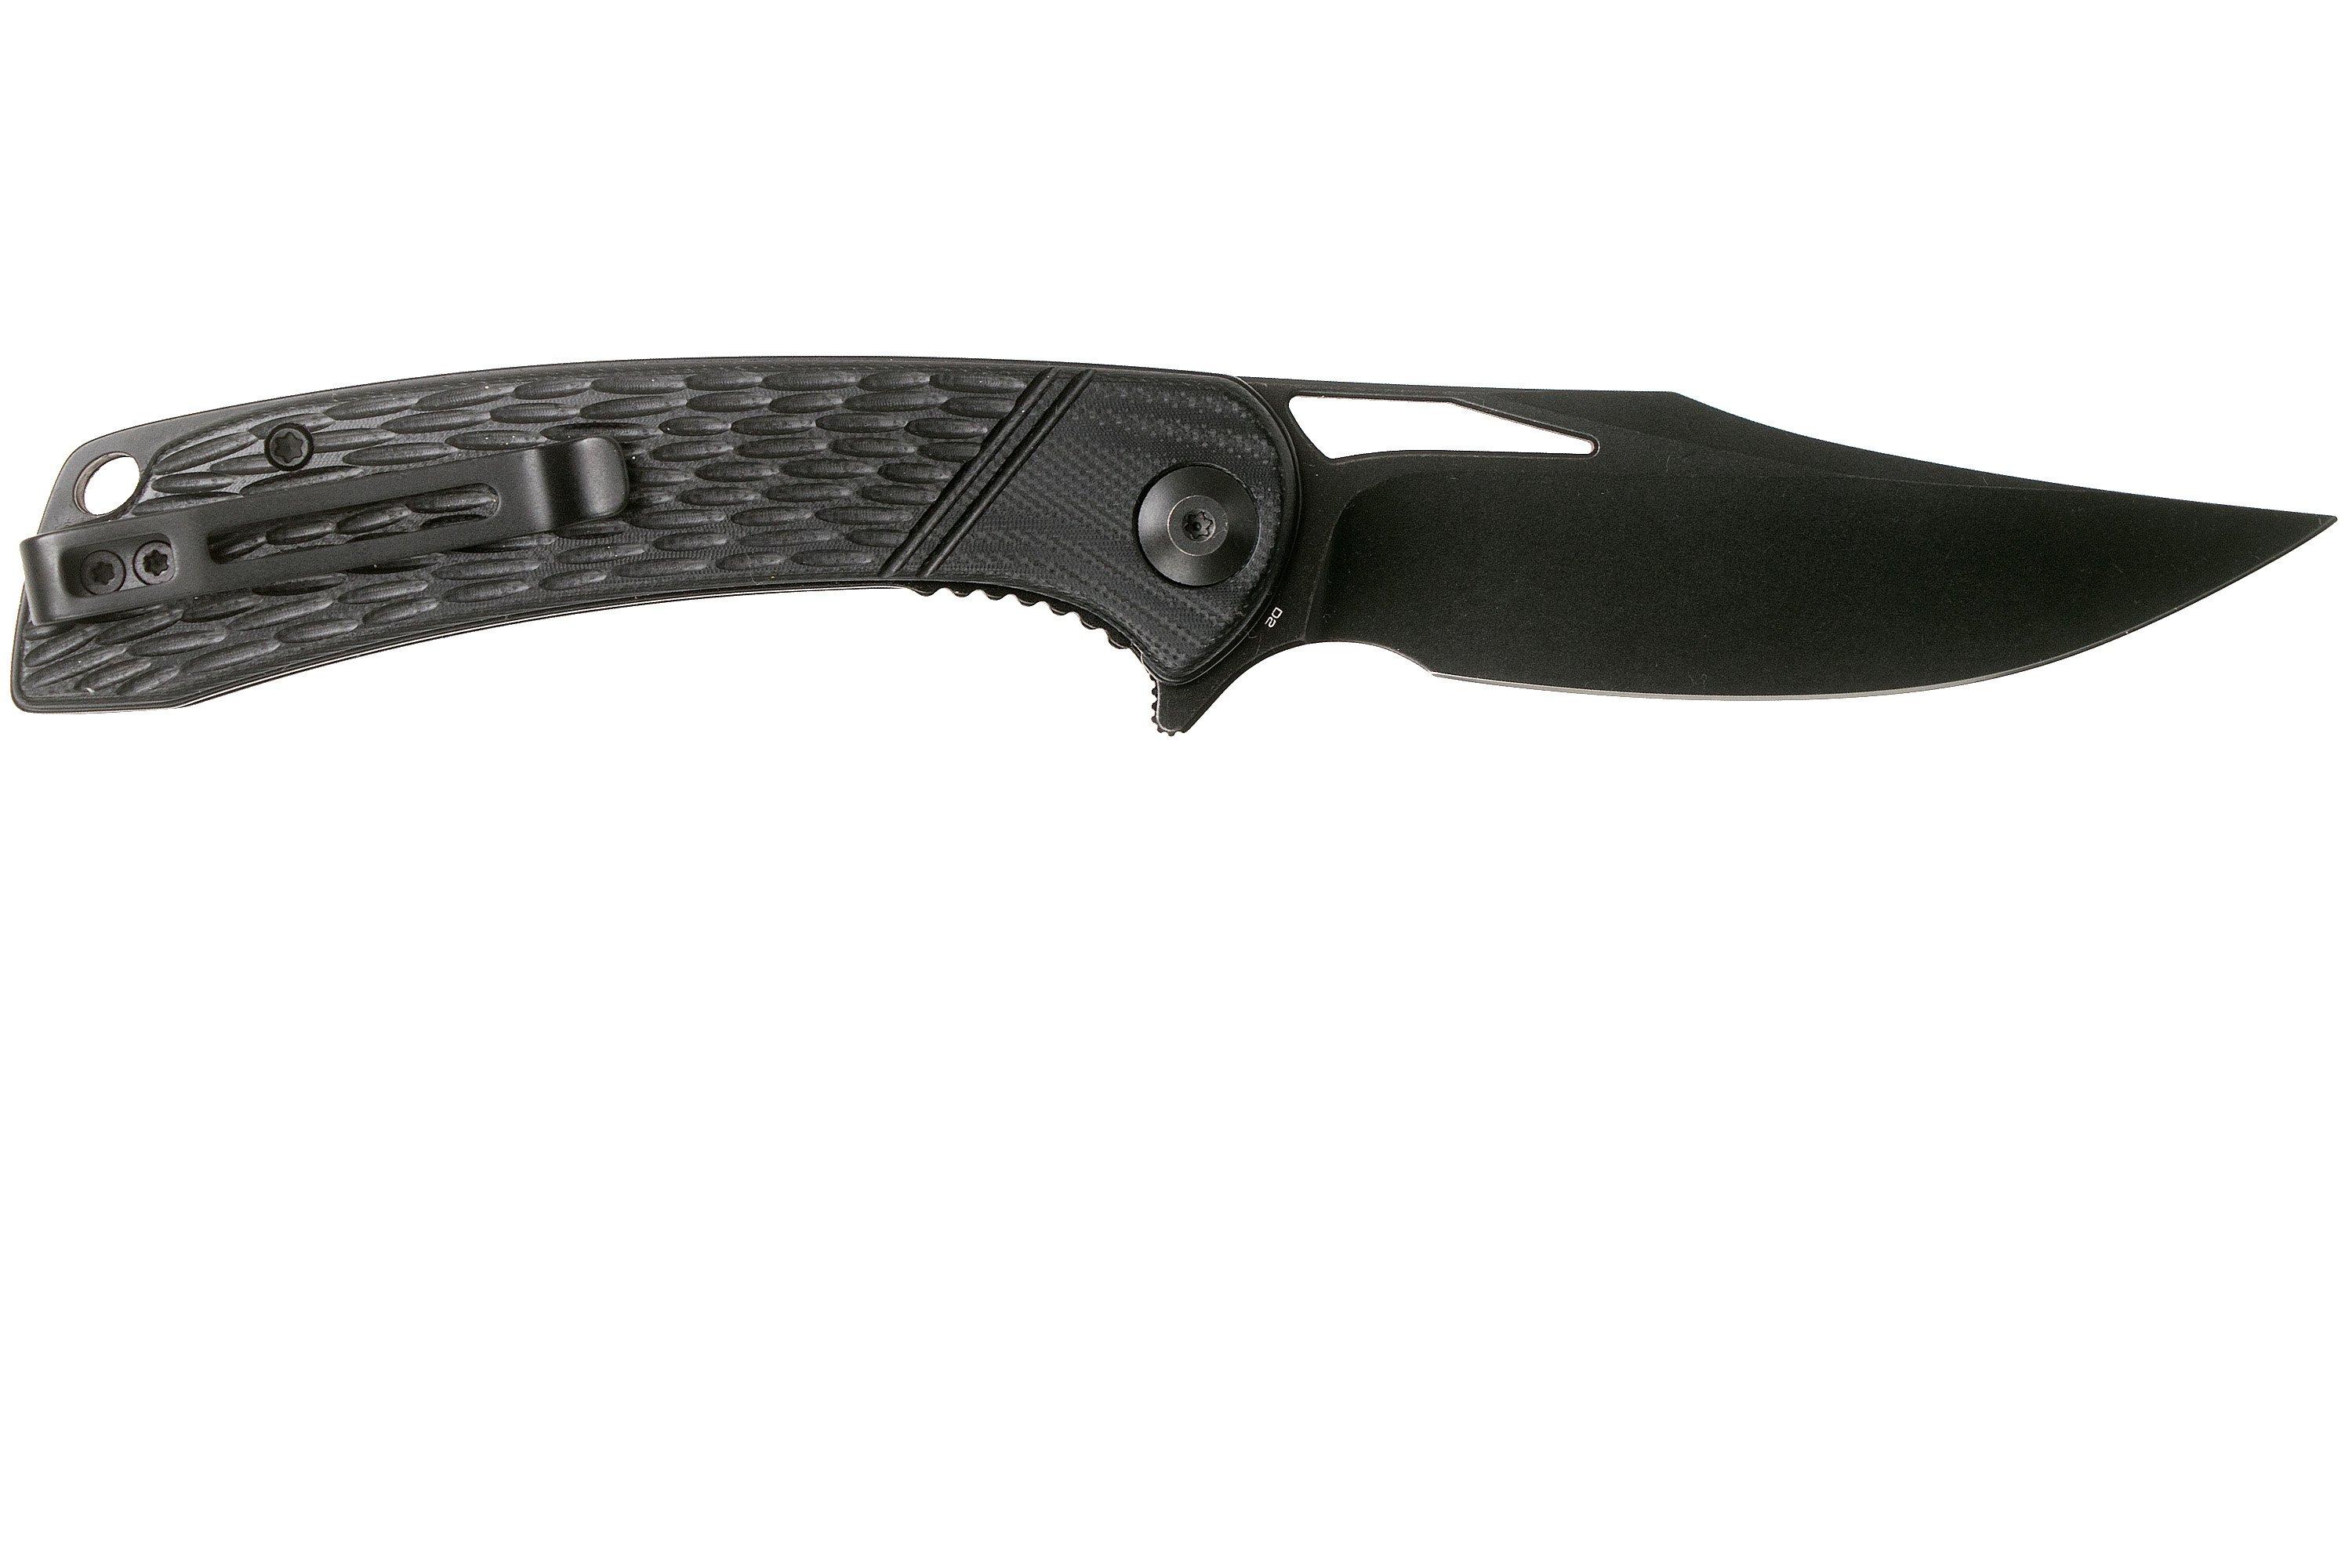 Civivi Dogma C2005G Blackwashed, Black G10 pocket knife ...